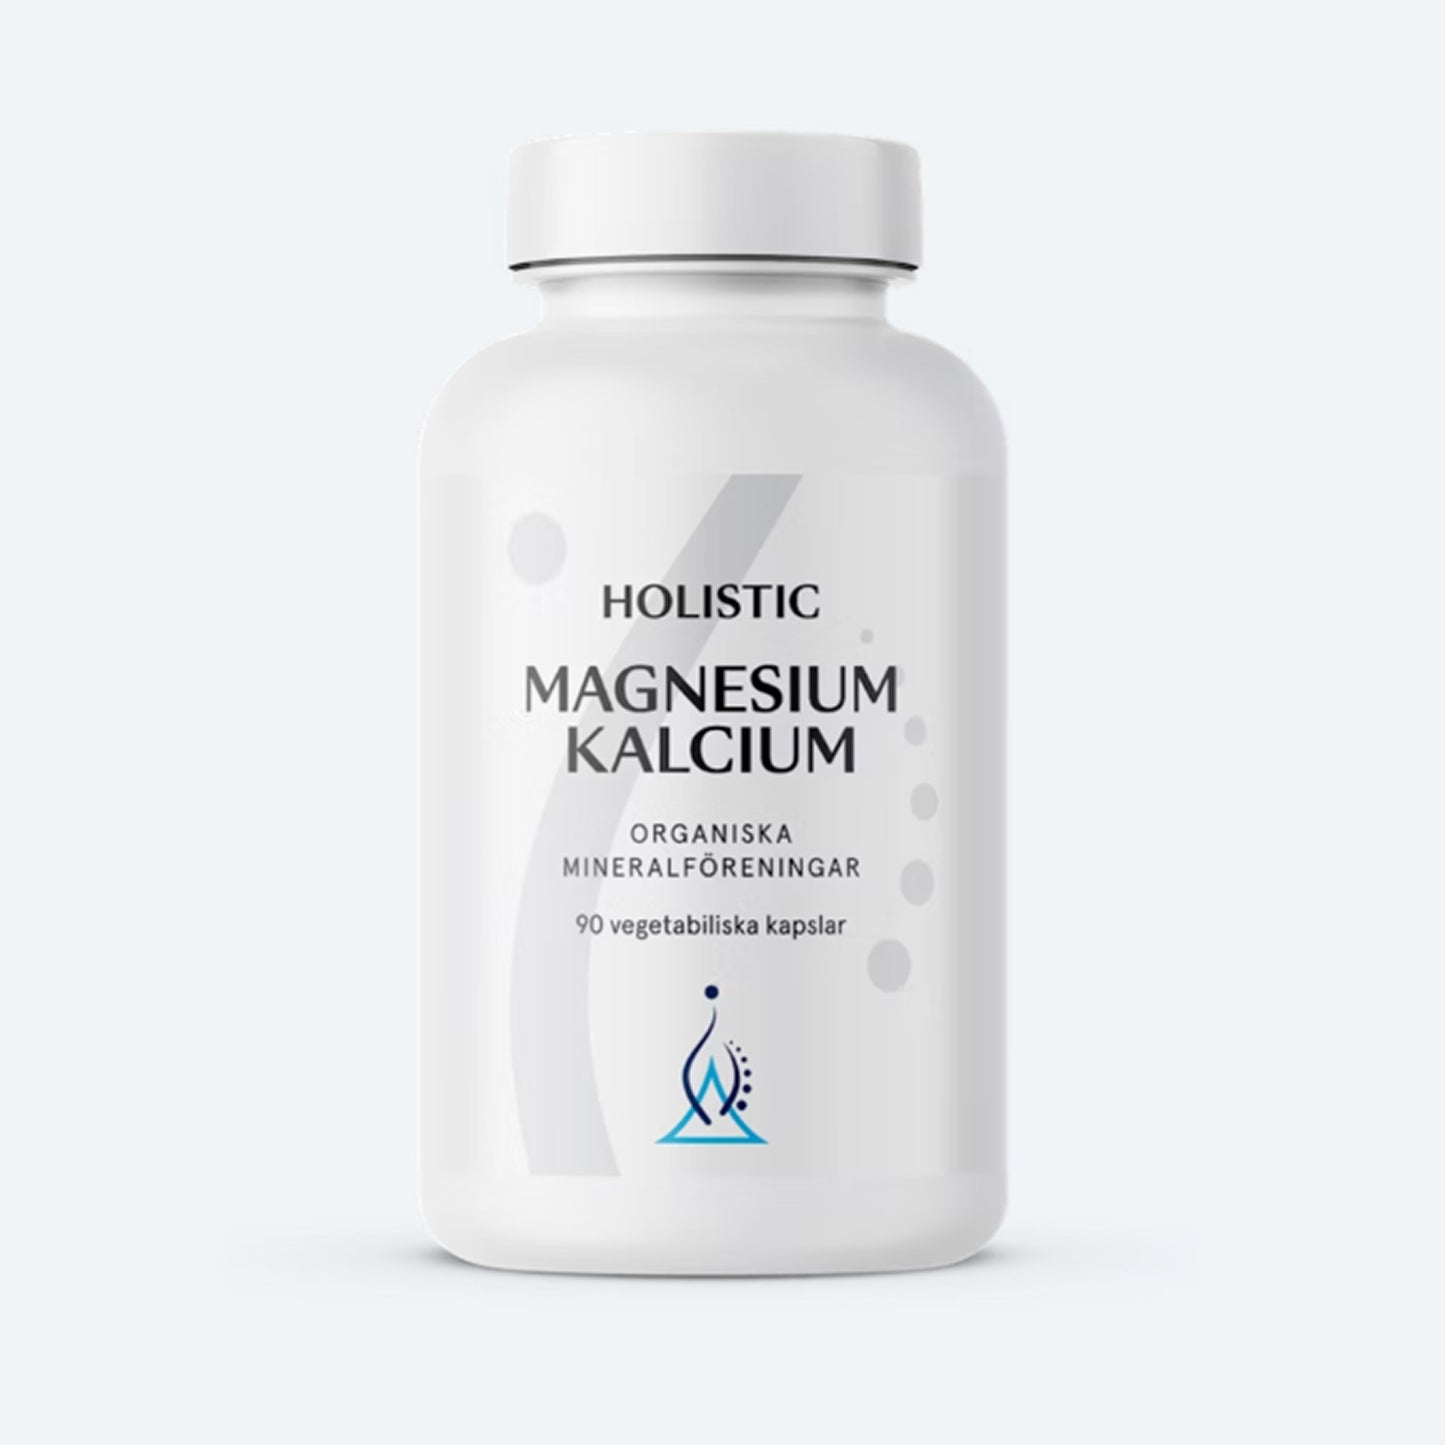 Magnesium/Kalcium